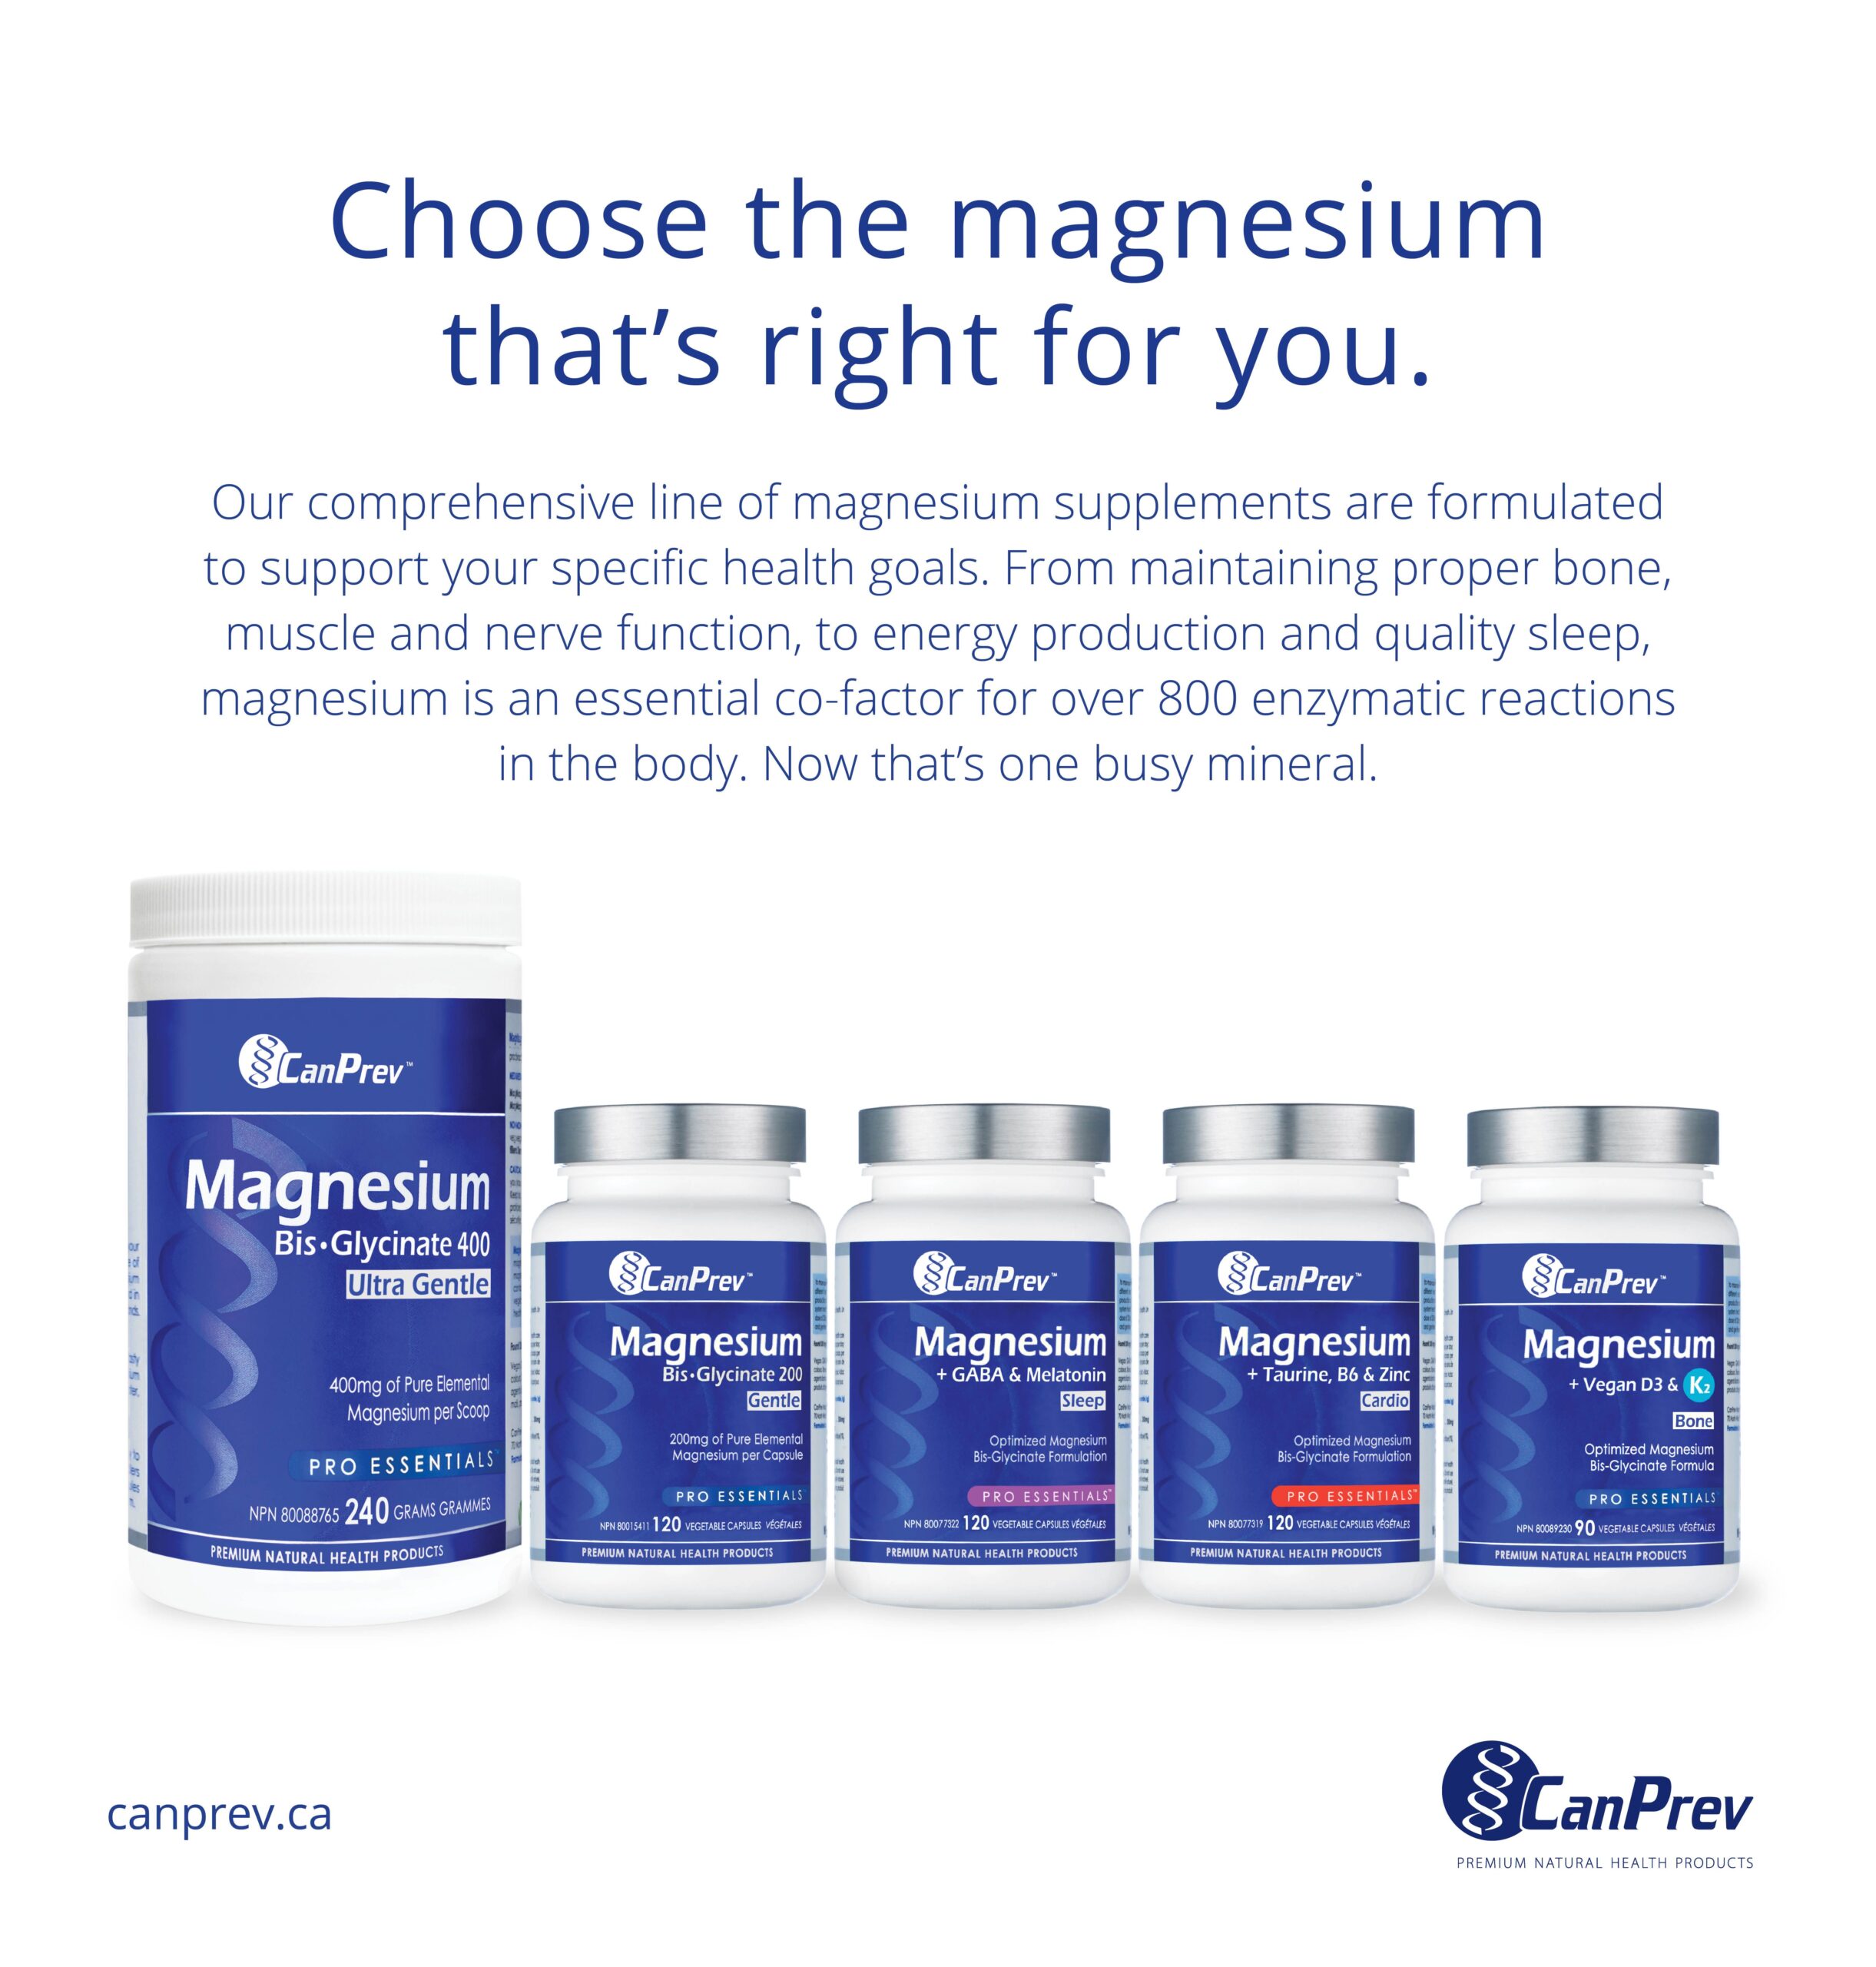 CanPrev Magnesium Family